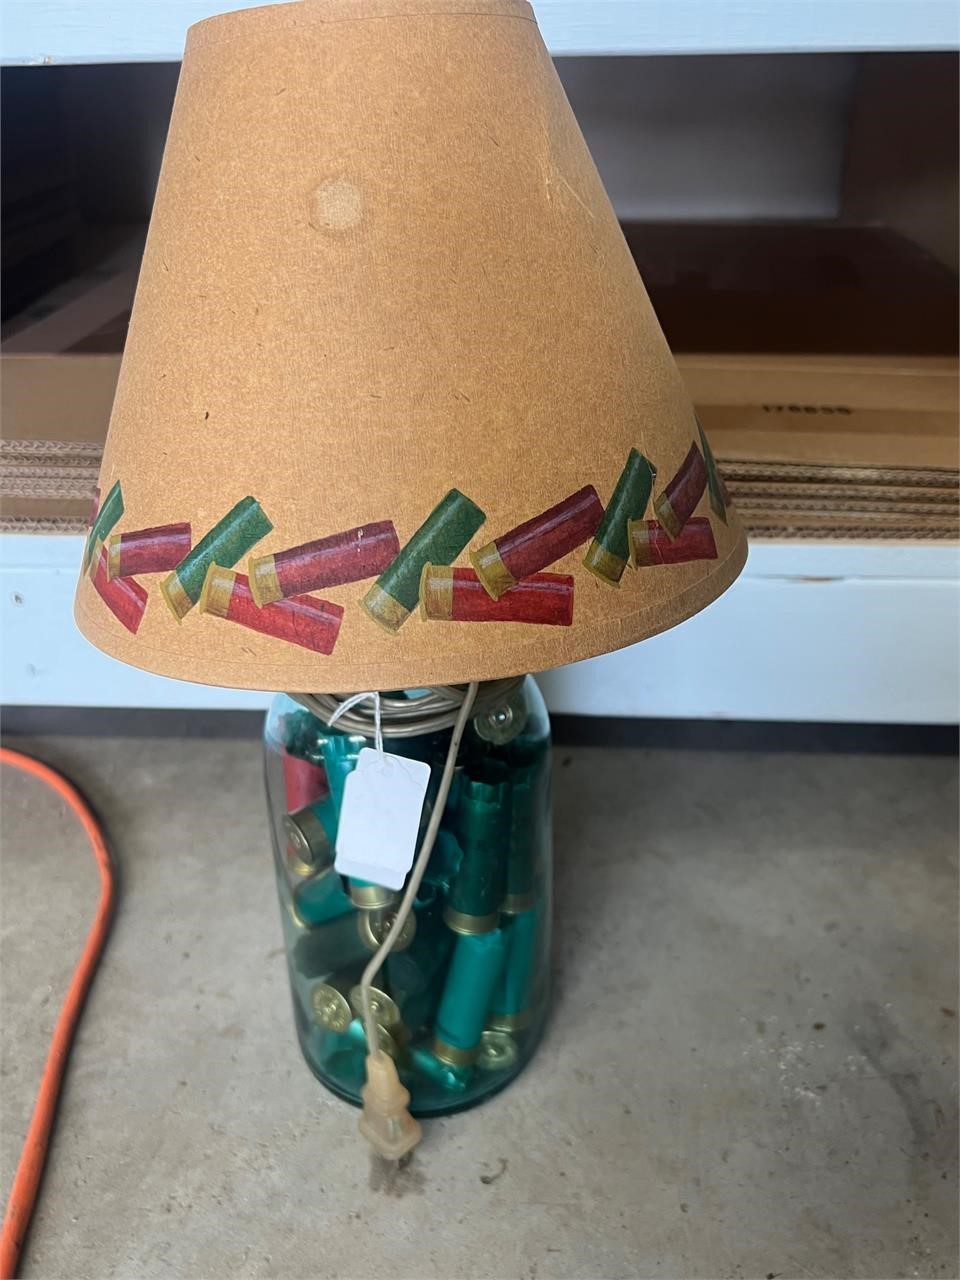 MASON JAR LAMP WITH SHOTGUN SHELLS